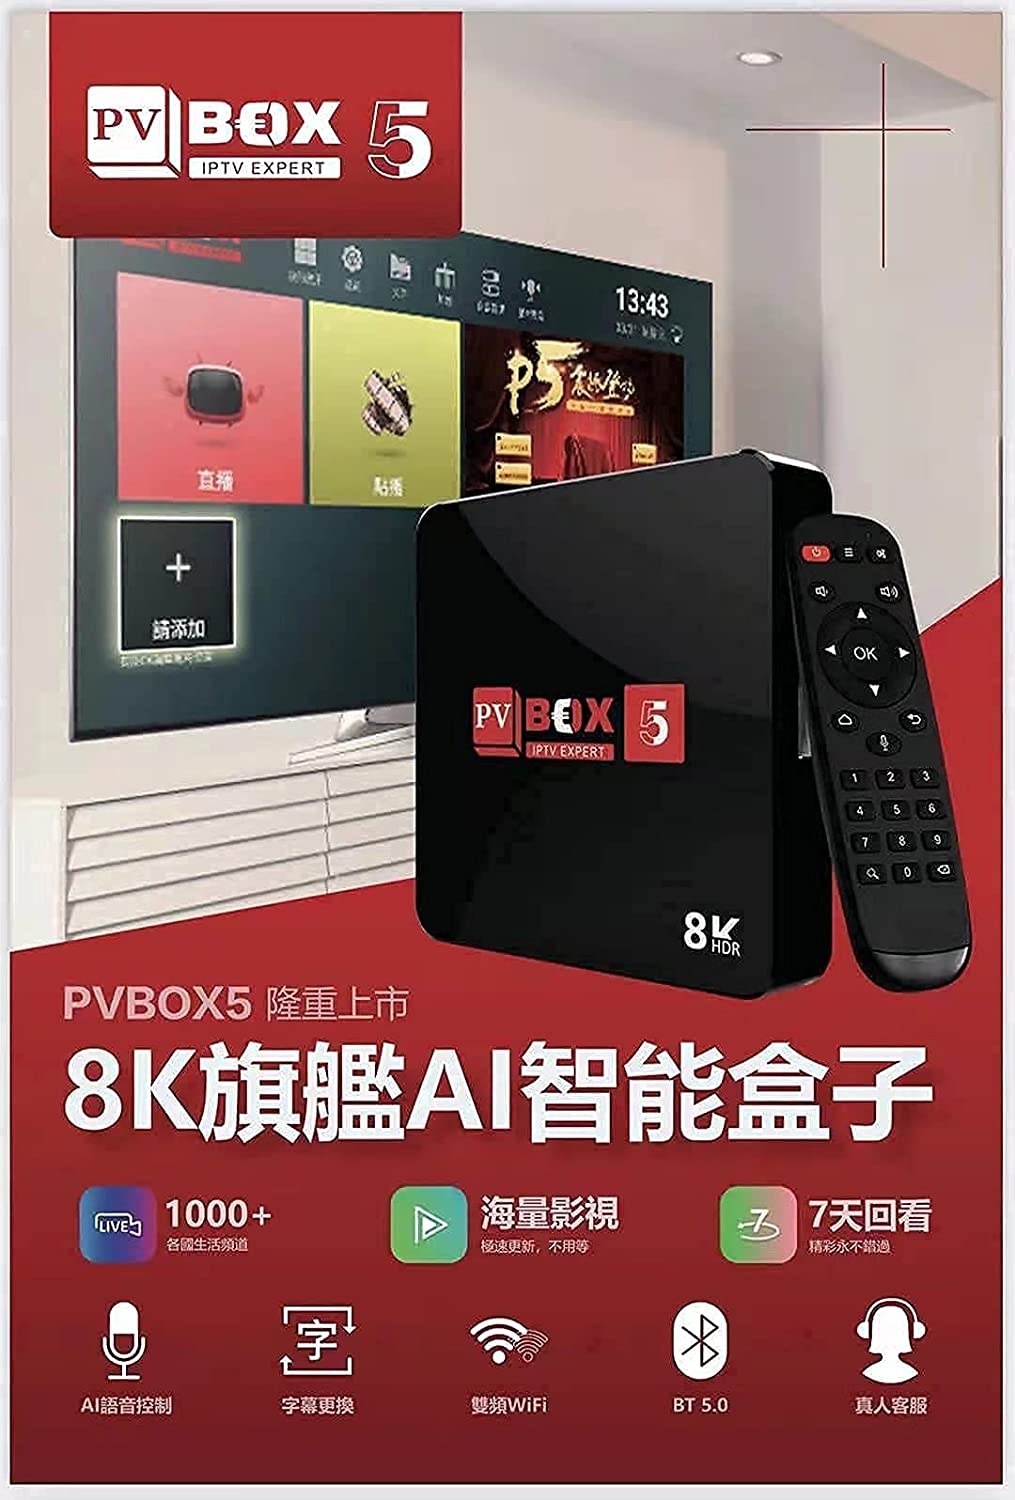 PVBox5: PVBox5 Chinese Hongkong Taiwan China HK Cantonese TV Box unblock Oversea Version PV Box PVBOX æ™®è¦– ä¸­æ–‡ç”µè§†ç›’ ä¸­æ¸¯å�°/æˆ�äººé¢‘é�“ æ©Ÿé ‚ç›’ ä¸­æ–‡é›»è¦–ç›’ +A.I æ™ºèƒ½è¯­éŸ³é�¥æŽ§